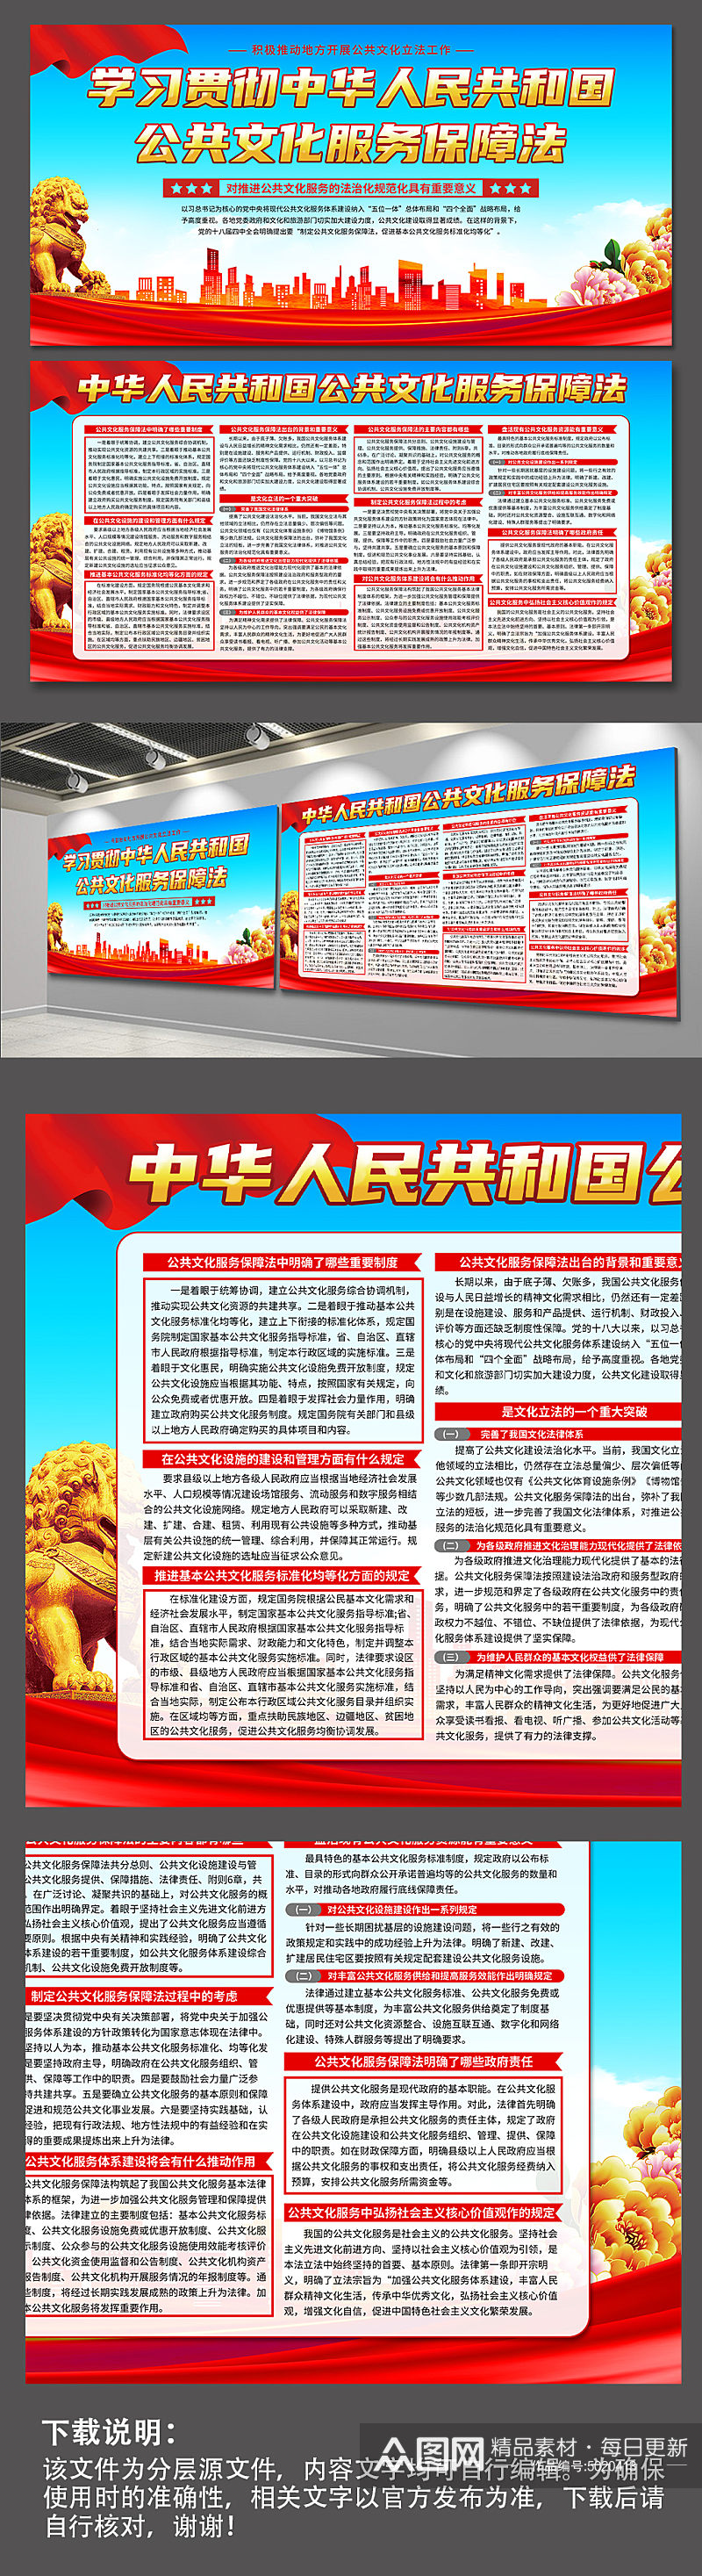 蓝色中华人民共和国公共文化服务保障法展板素材